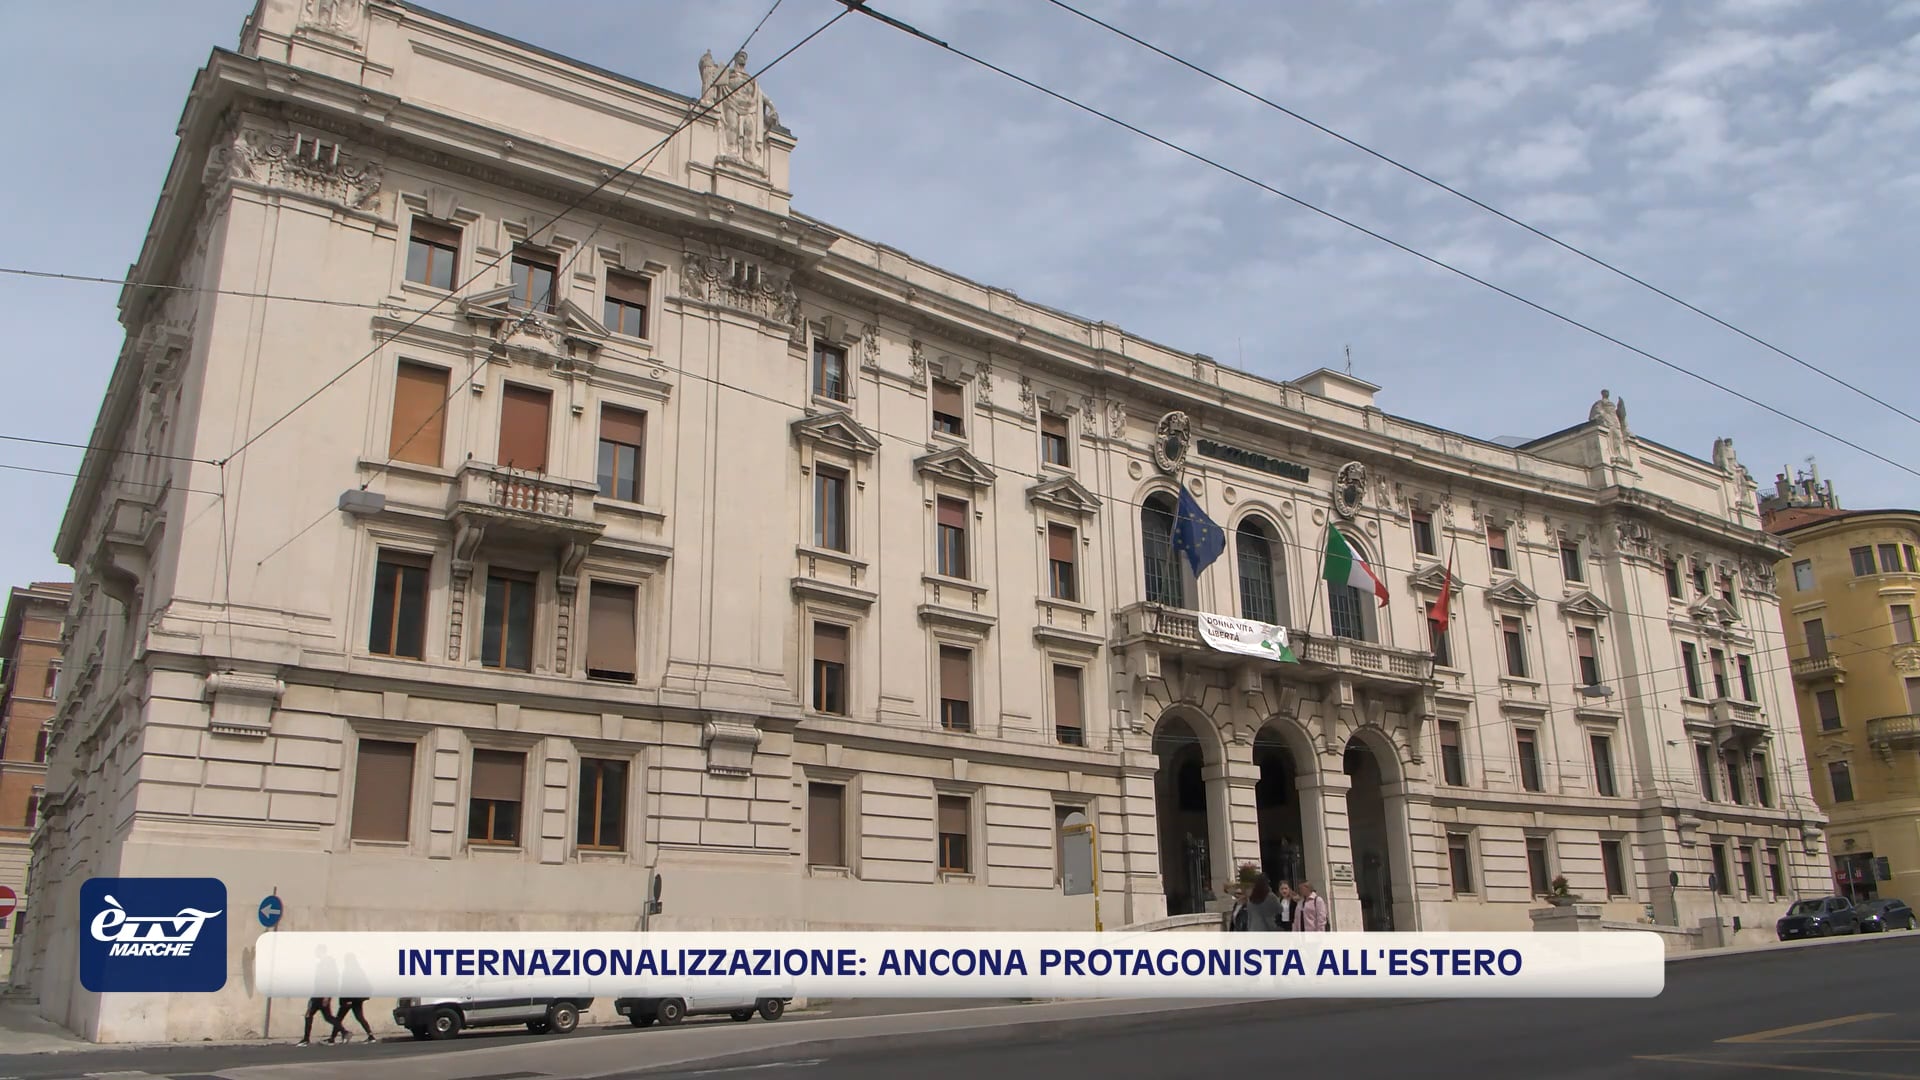 Internazionalizzazione: Ancona protagonista all'estero - VIDEO